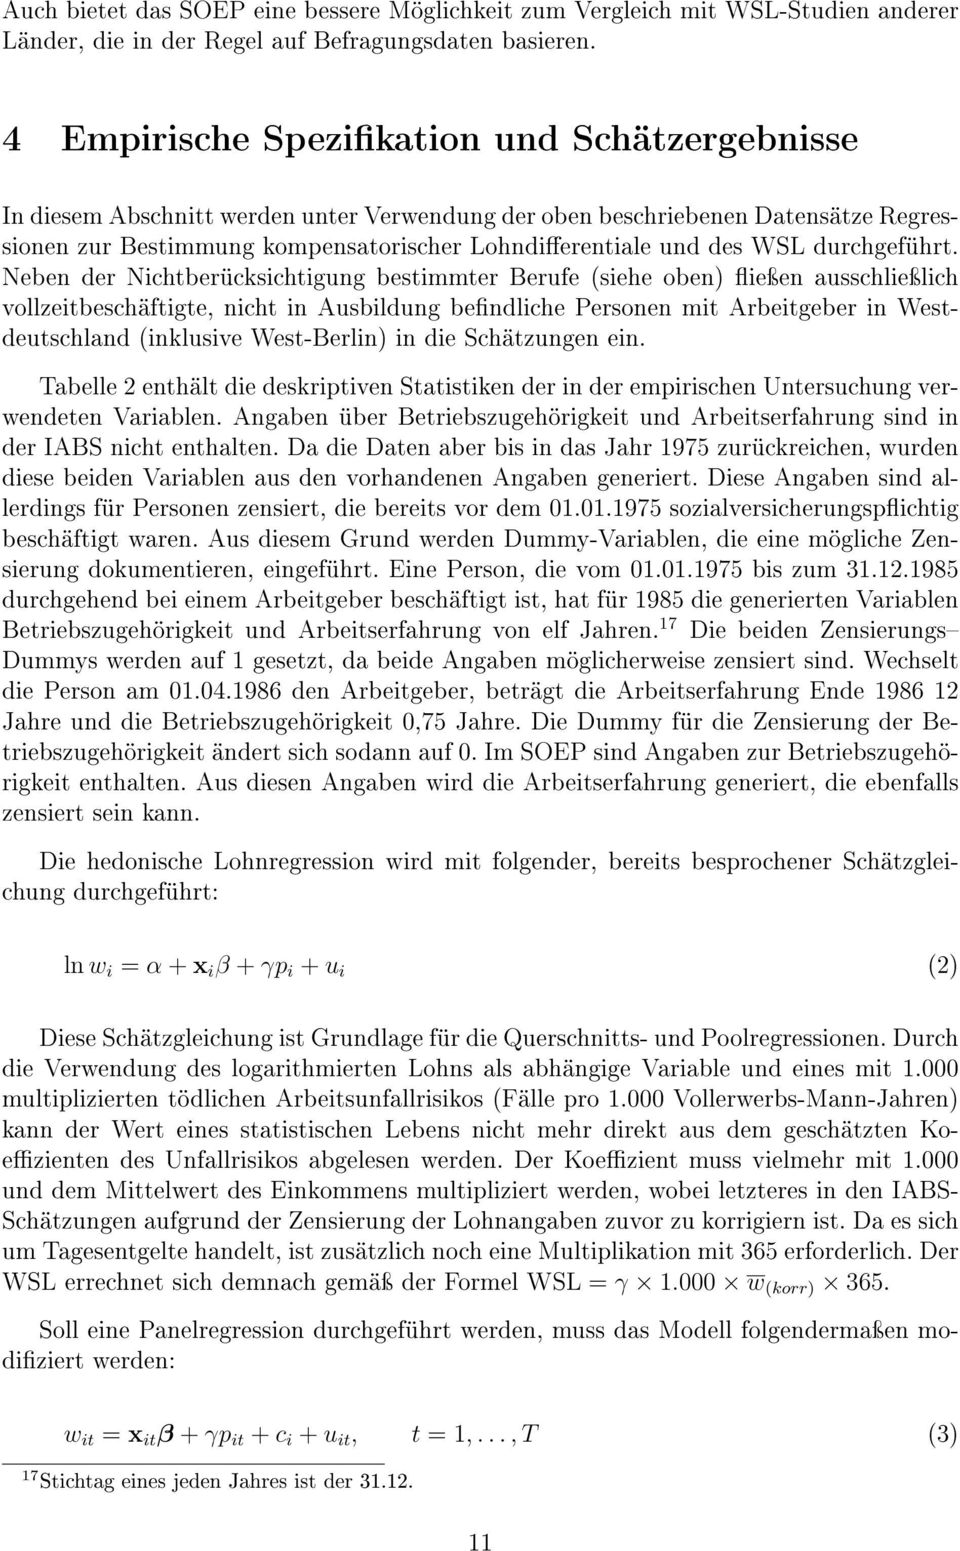 Berufe (siehe oben) ieÿen ausschlieÿlich vollzeitbeschäftigte, nicht in Ausbildung bendliche Personen mit Arbeitgeber in Westdeutschland (inklusive West-Berlin) in die Schätzungen ein Tabelle 2